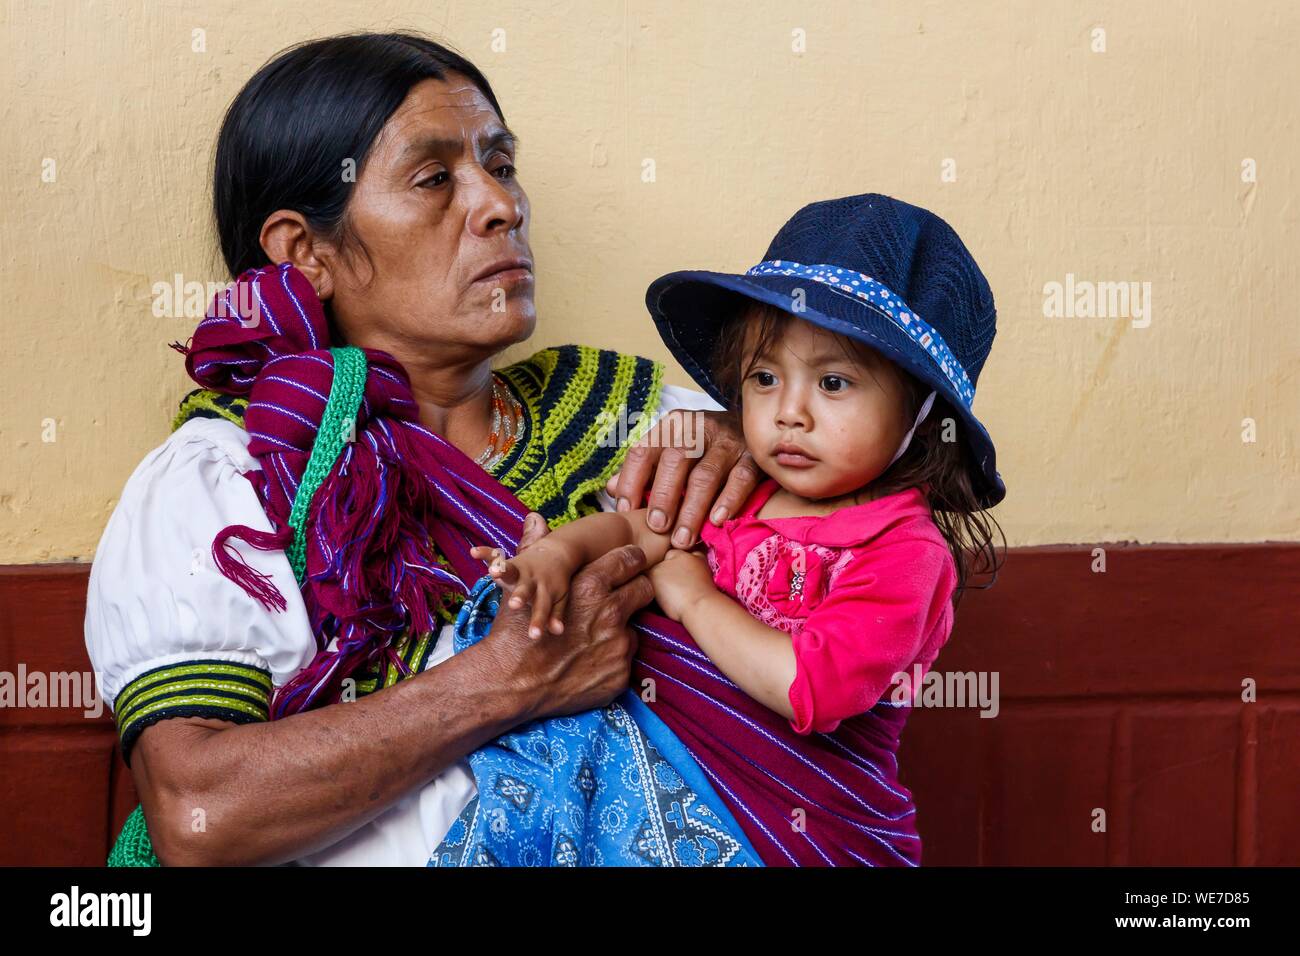 Mexiko, Chiapas, Nuevo Dominguez, indianische Frau mit ihrer Tochter Stockfoto